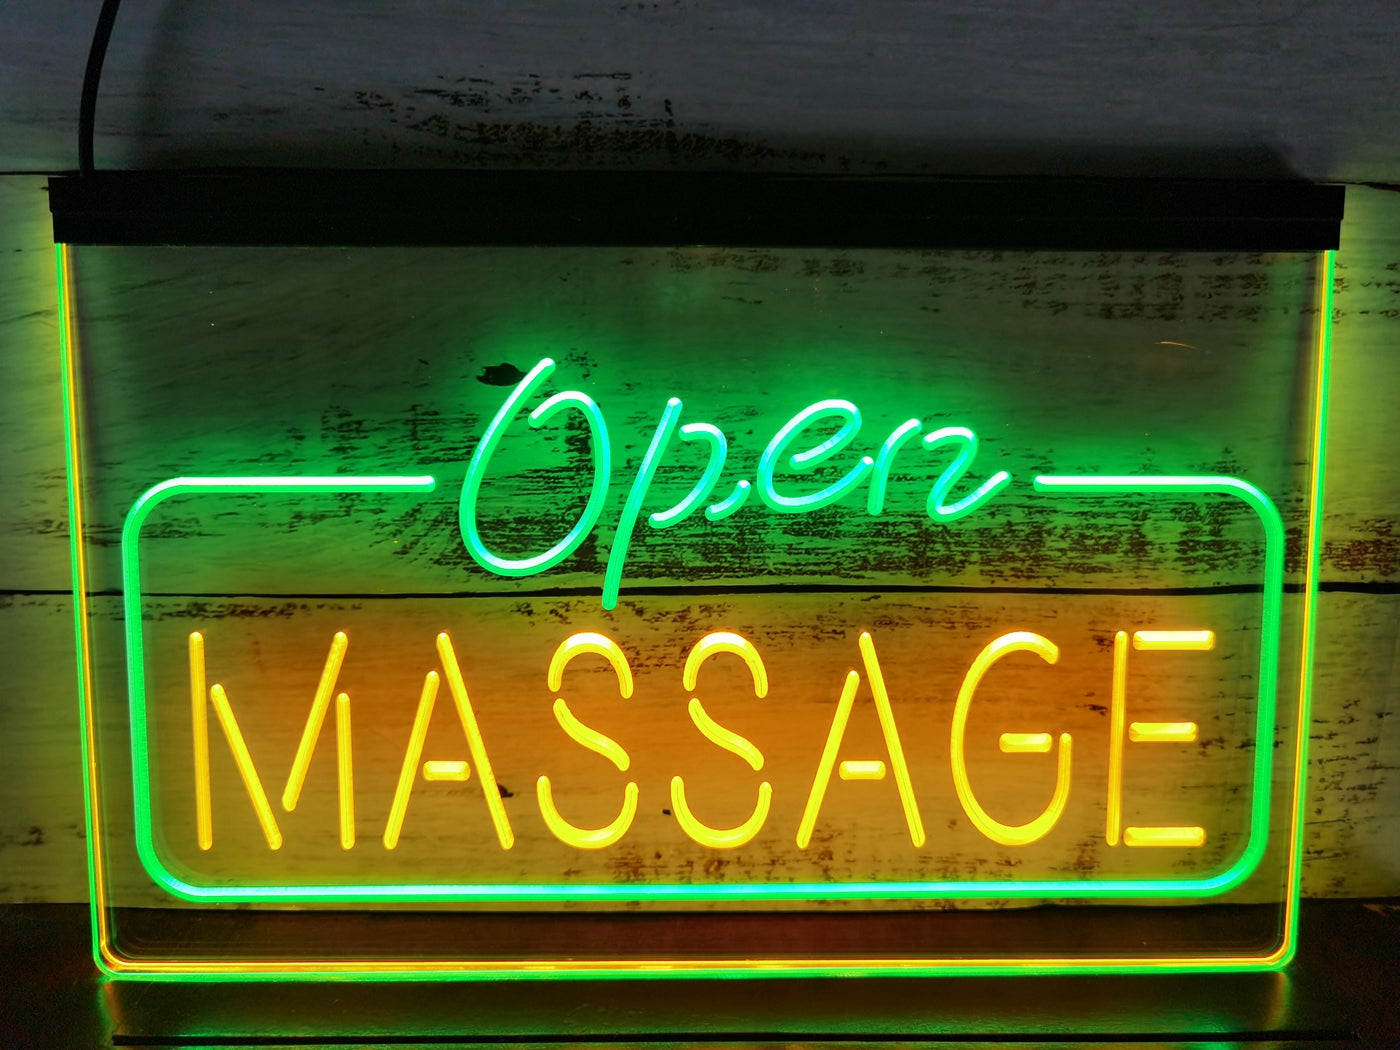 Neon Sign Dual Color Open Massage Spa Massage Beauty Shop Decor